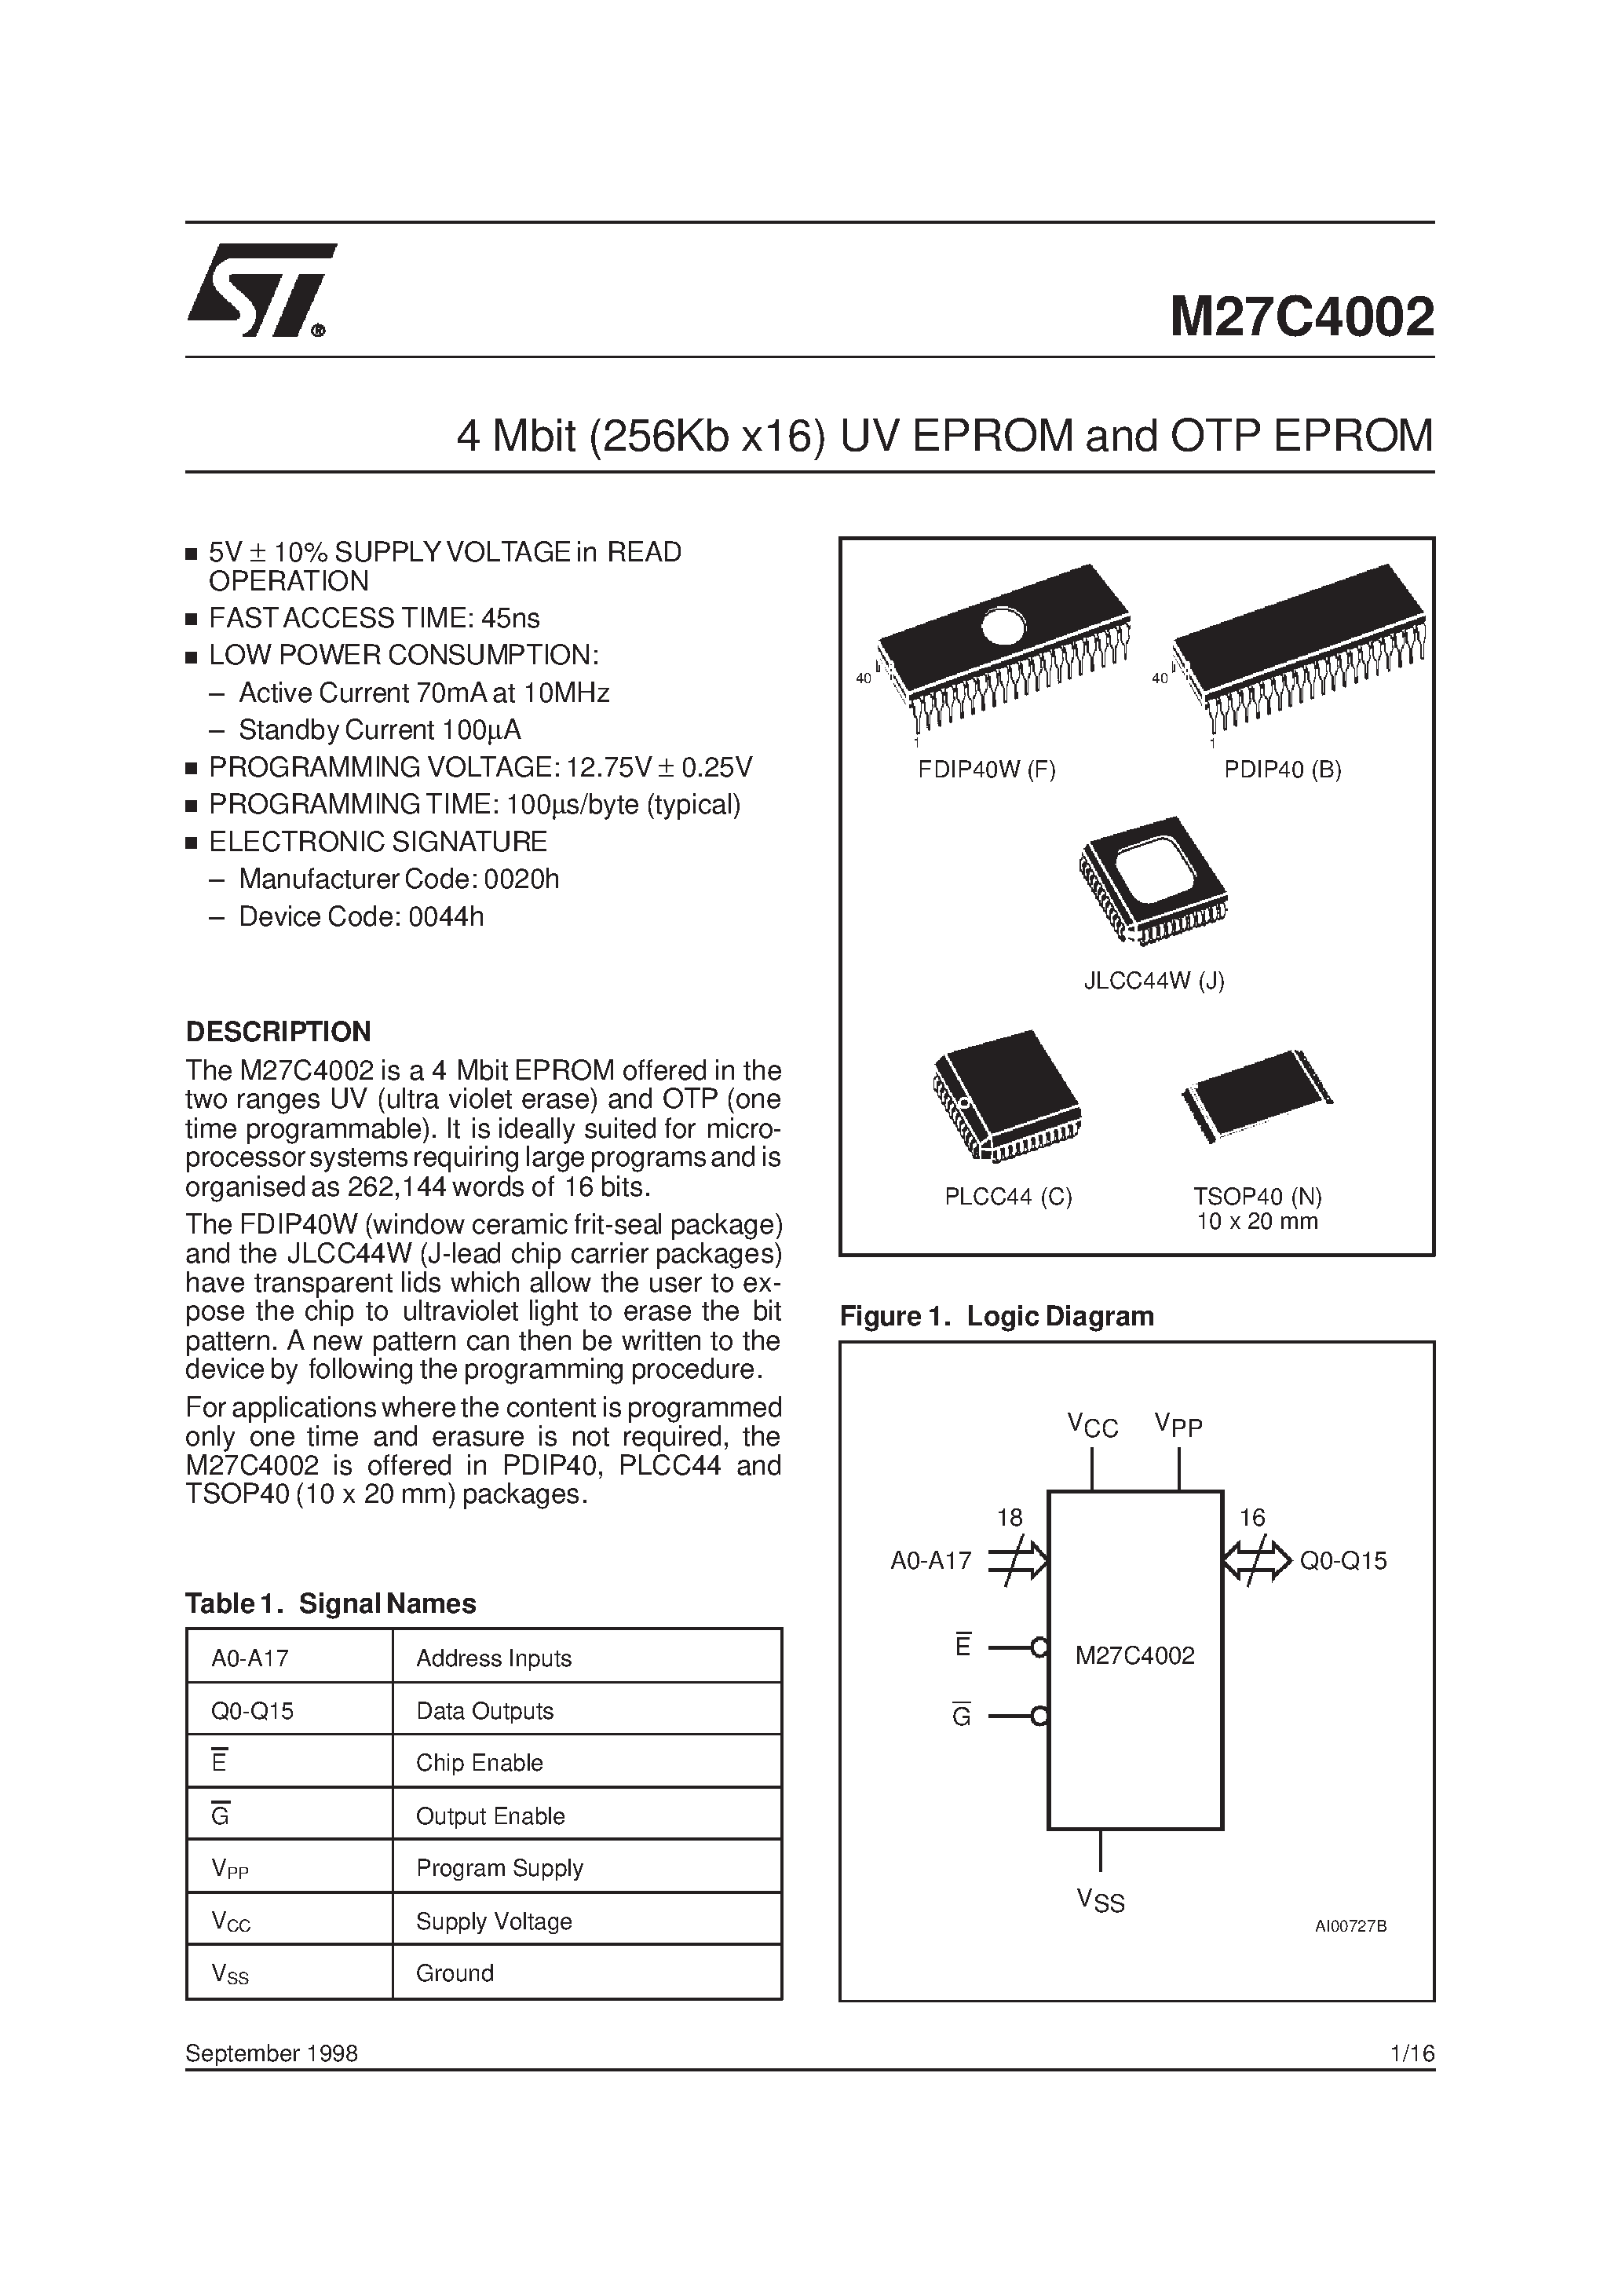 Datasheet M27C4002-10F6X - 4 Mbit 256Kb x16 UV EPROM and OTP EPROM page 1